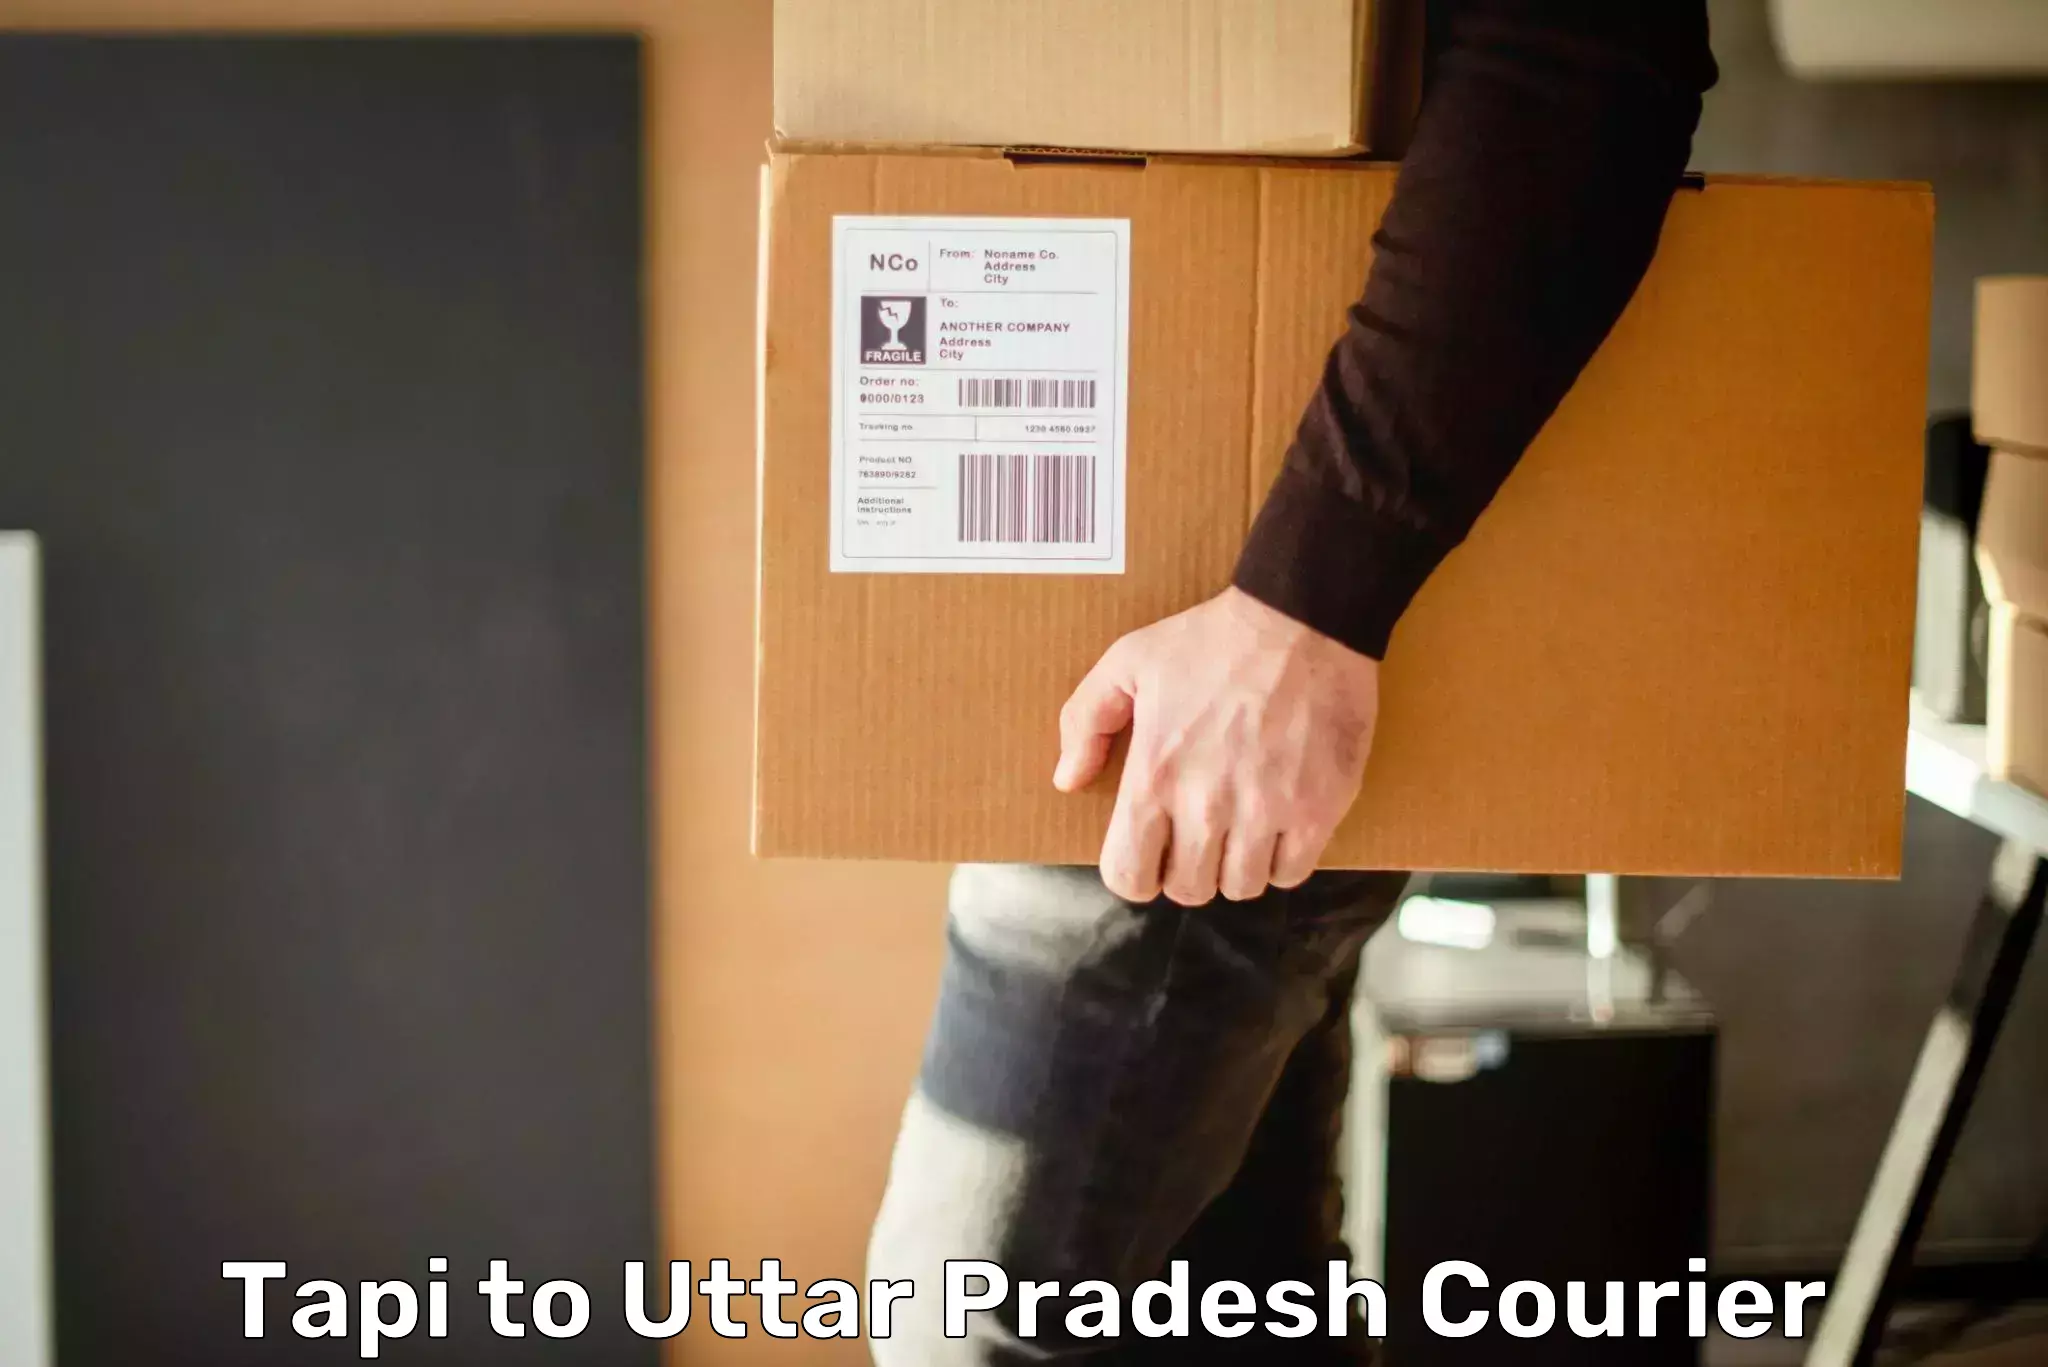 Advanced freight services Tapi to Uttar Pradesh